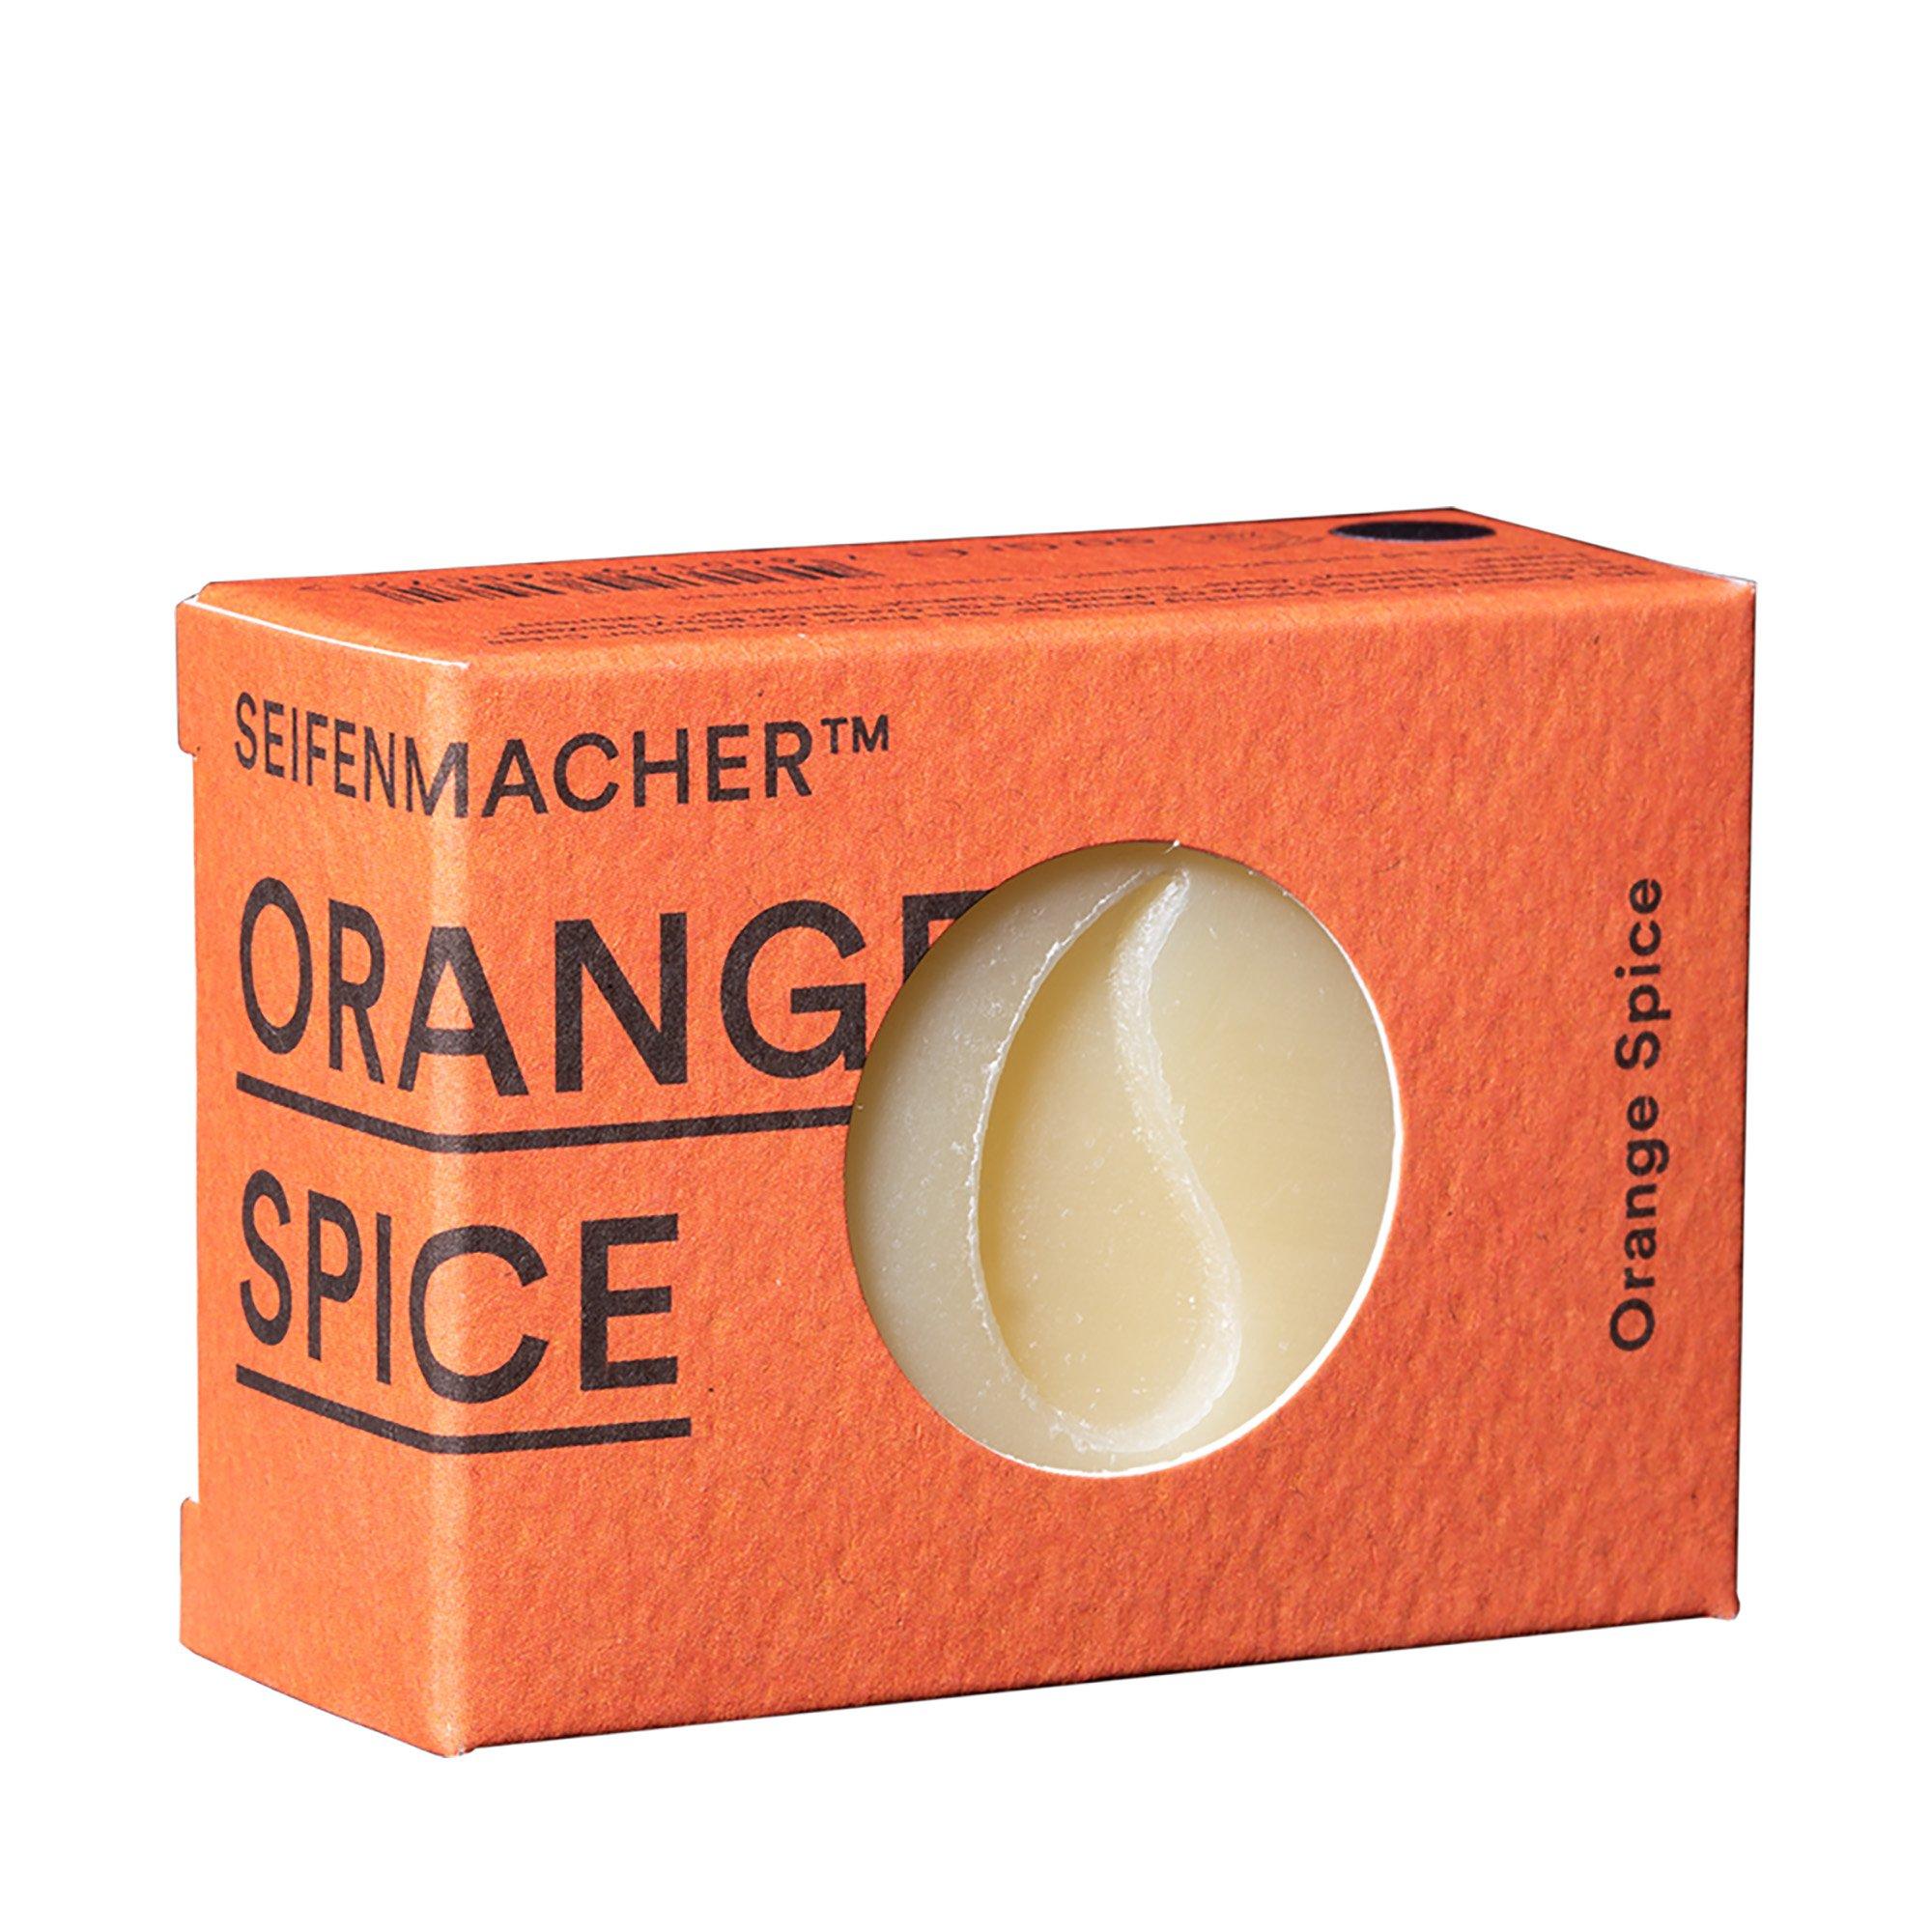 Seifenmacher Orange-Spice Savon Artisanal Au Orange Et Epices 